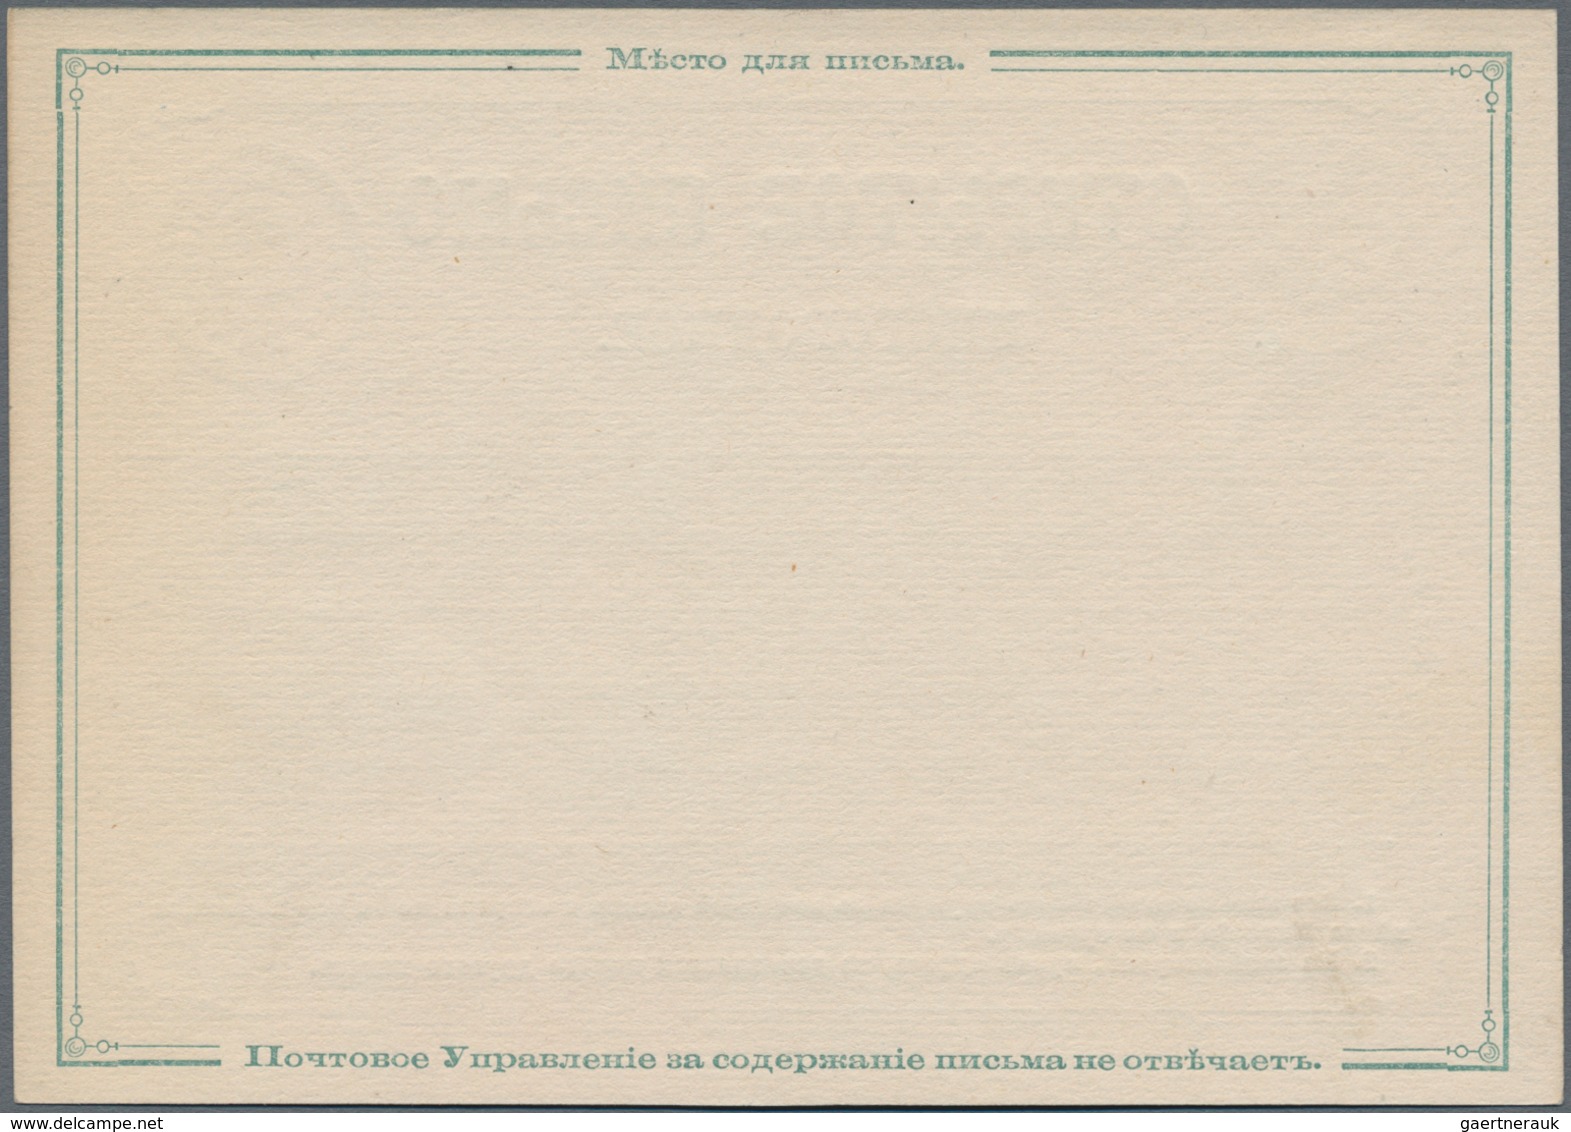 Russland - Ganzsachen: 1875 Unused Postal Stationery Card 4 Kop. Green On White, Variant With Clear - Postwaardestukken